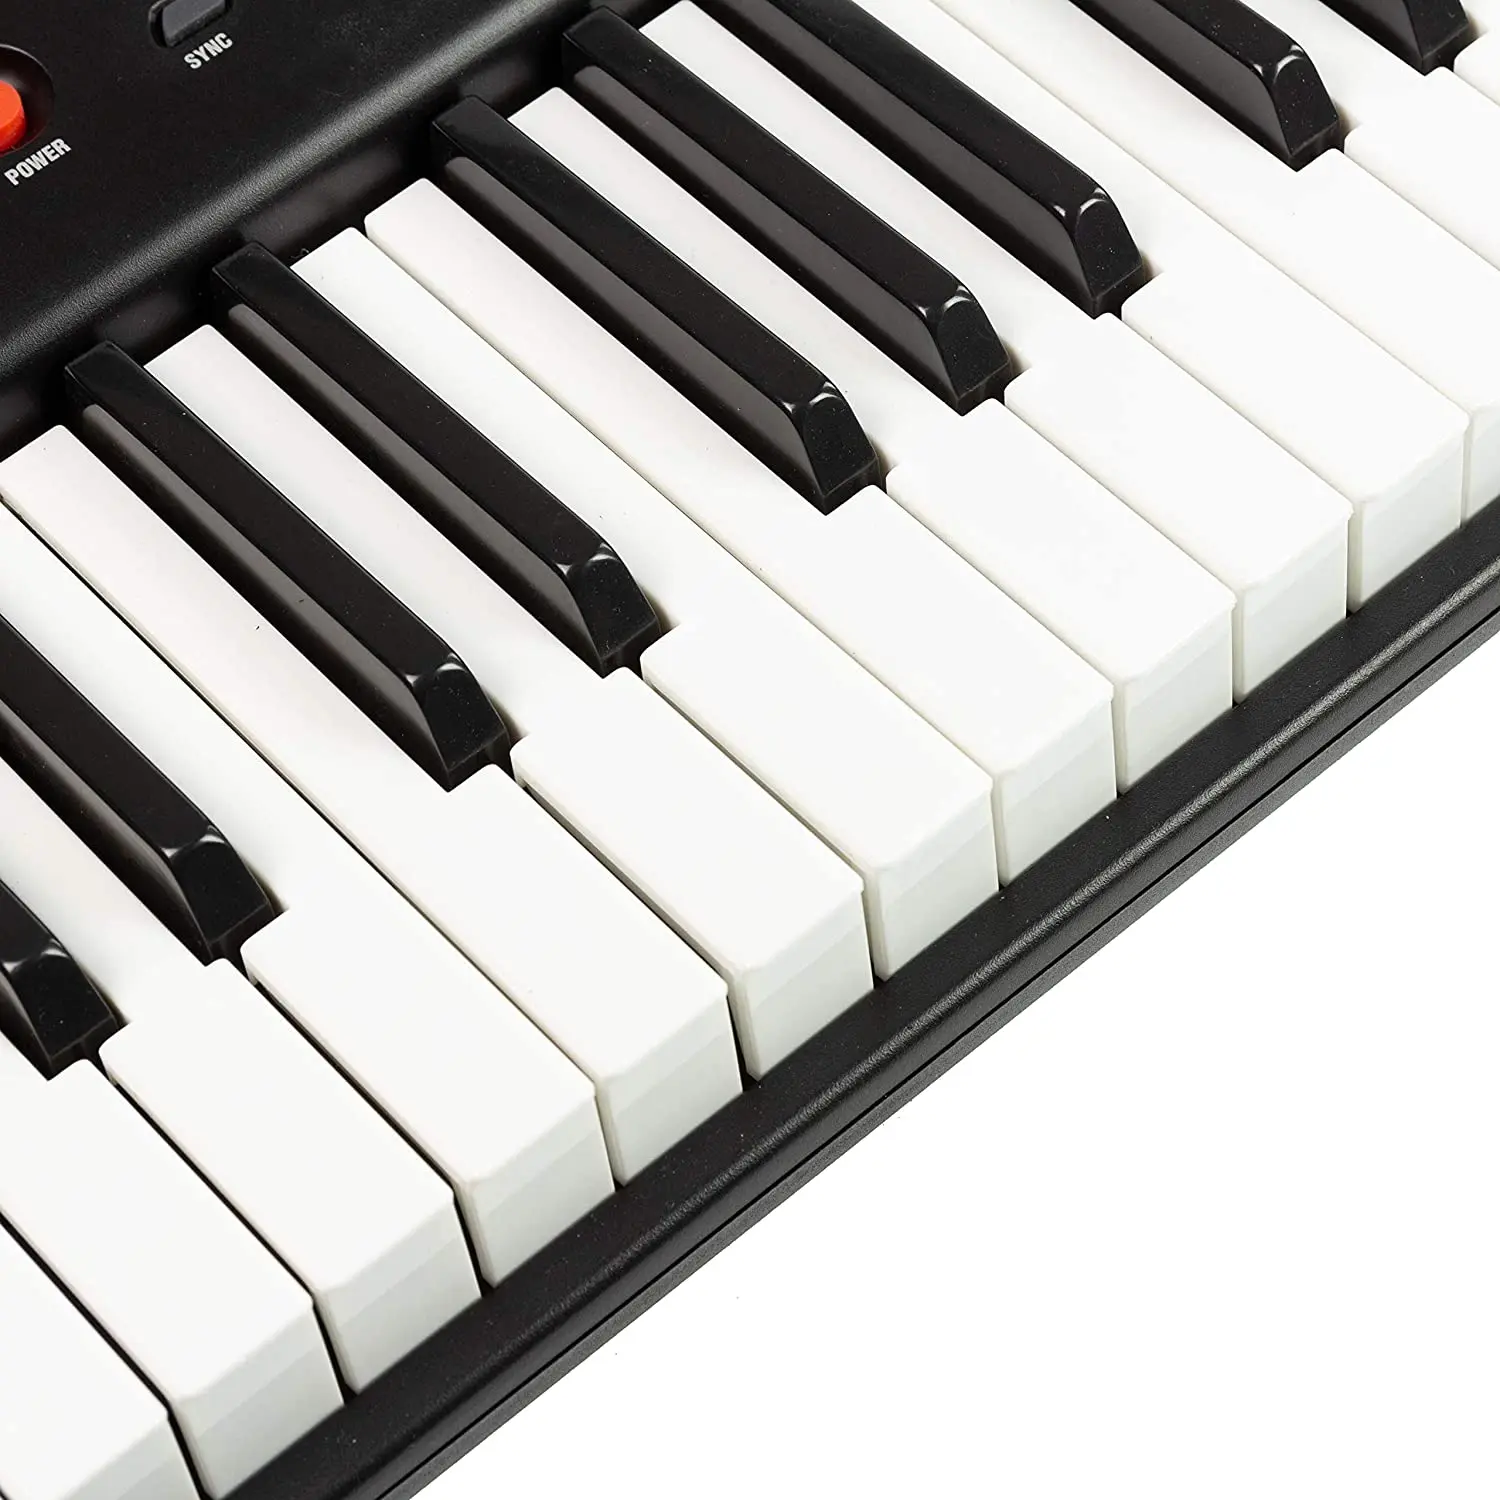 Инструменты musicais пианино и органы электронное портативное 61 клавиша набор клавиатур для роскошные